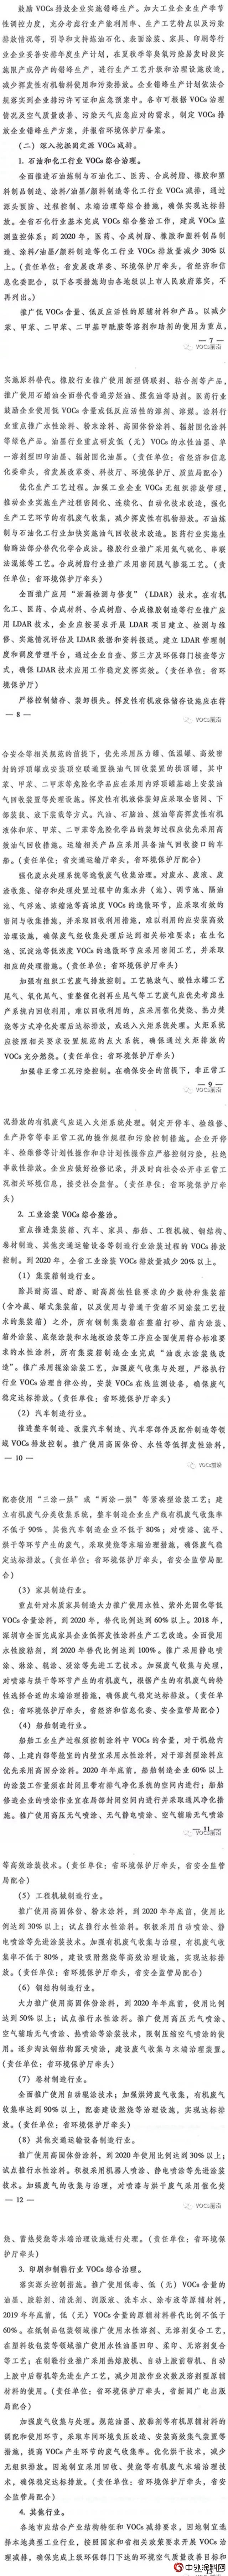 广东五部门印发《挥发性有机物(VOCs)整治与减排工作方案》(2018-2020年)